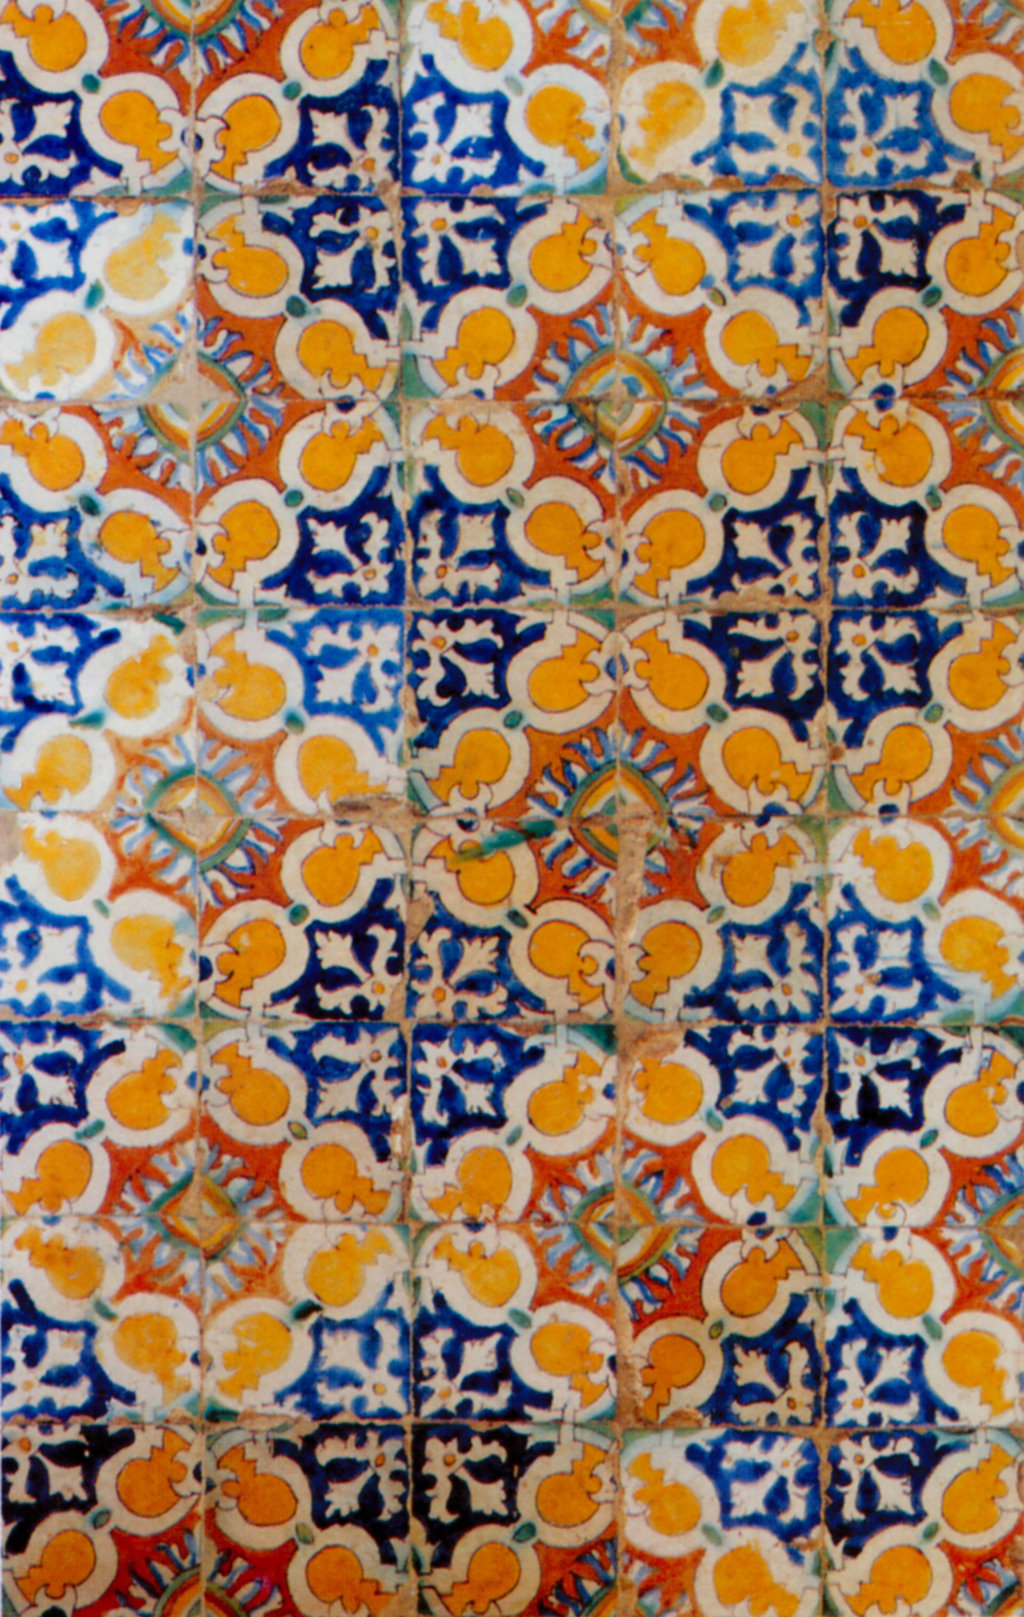 03103. Panel de azulejos. Museo de Bellas Artes. Sevilla.